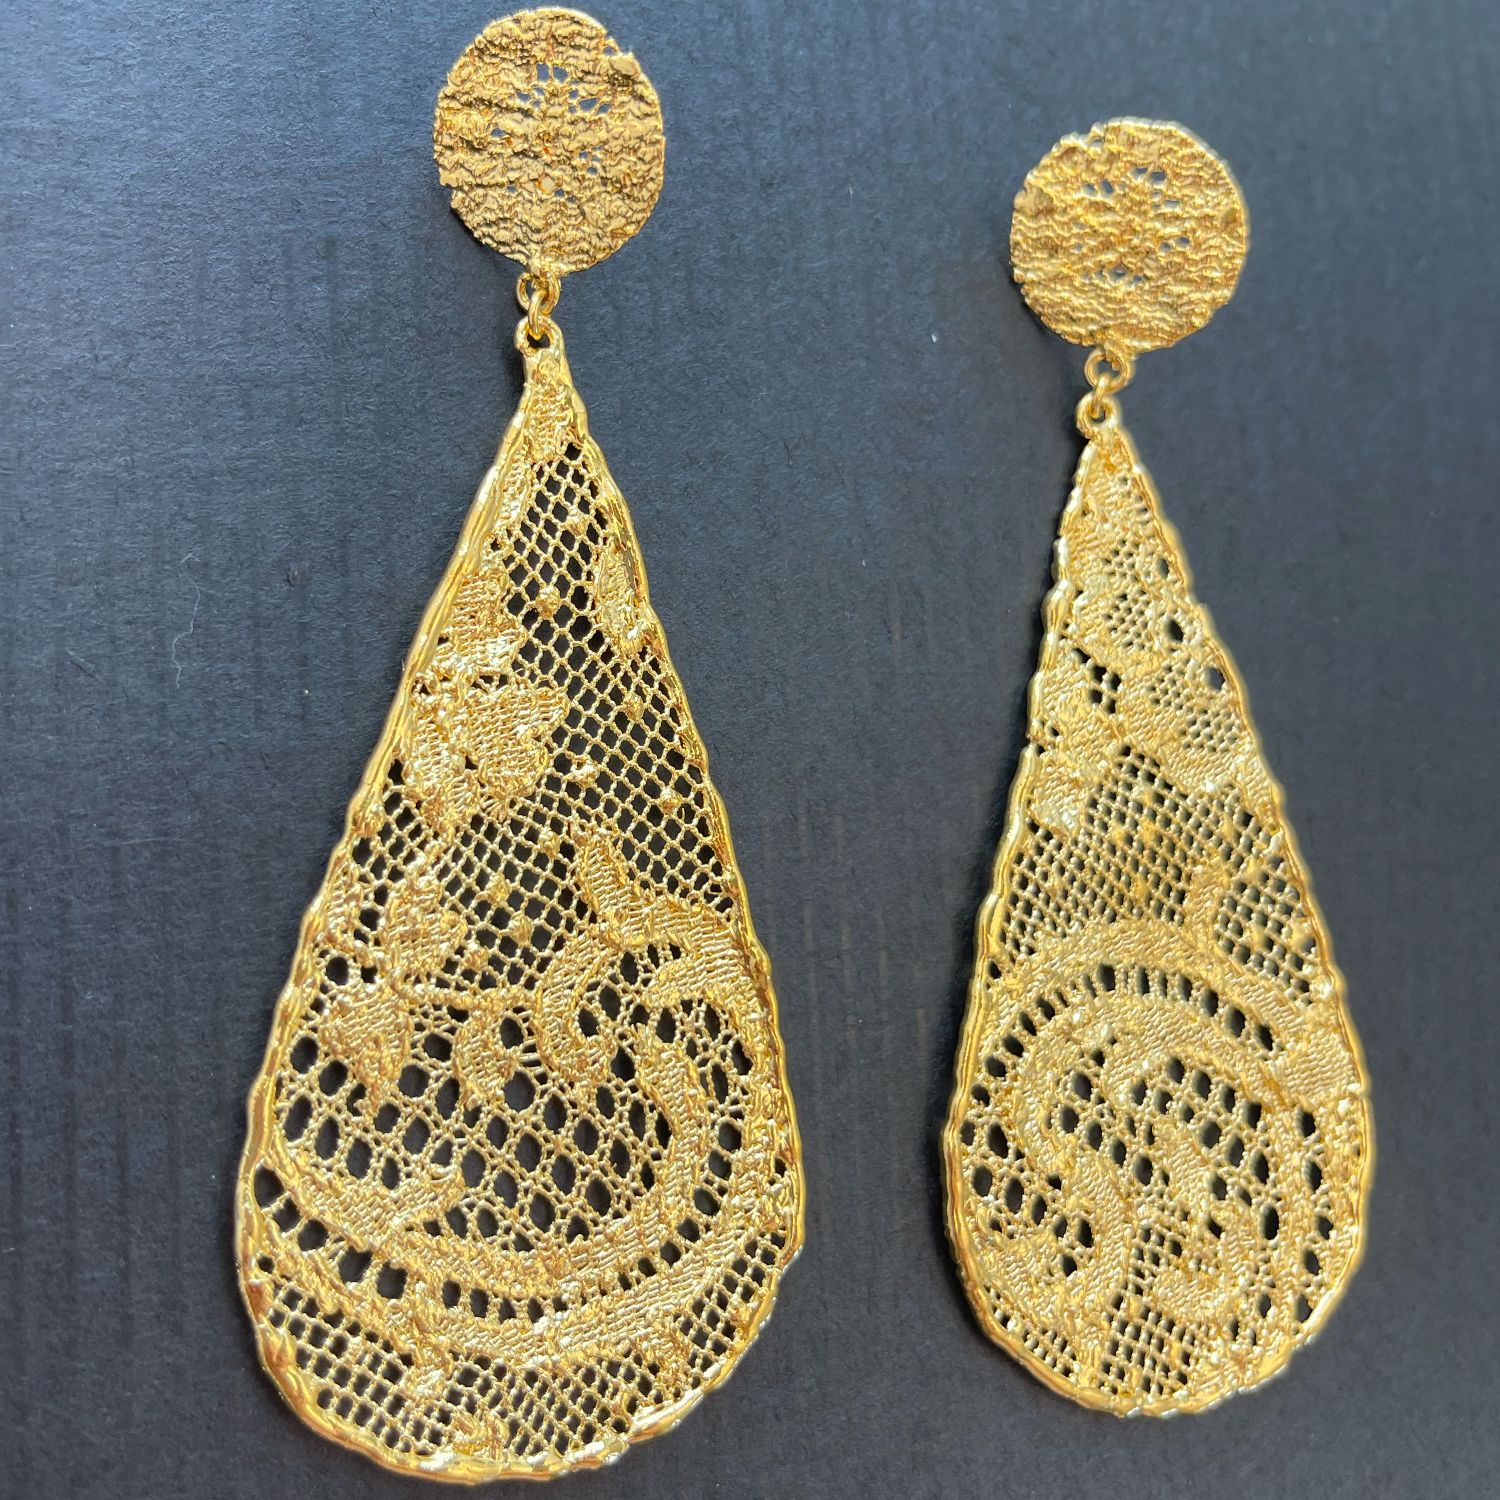 Large lace teardrop earrings dipped in 24k gold.